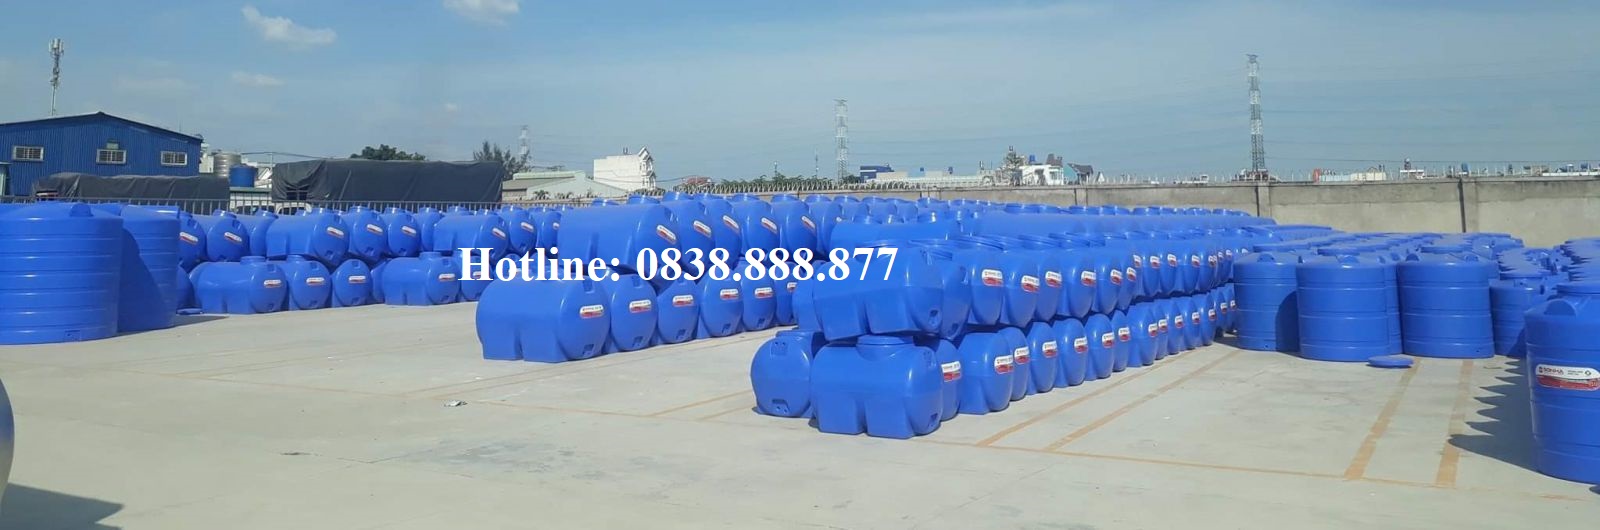 Hình ảnh sản phẩm bồn nước nhựa Sơn hà đủ dung tích từ 300L đến 10000L